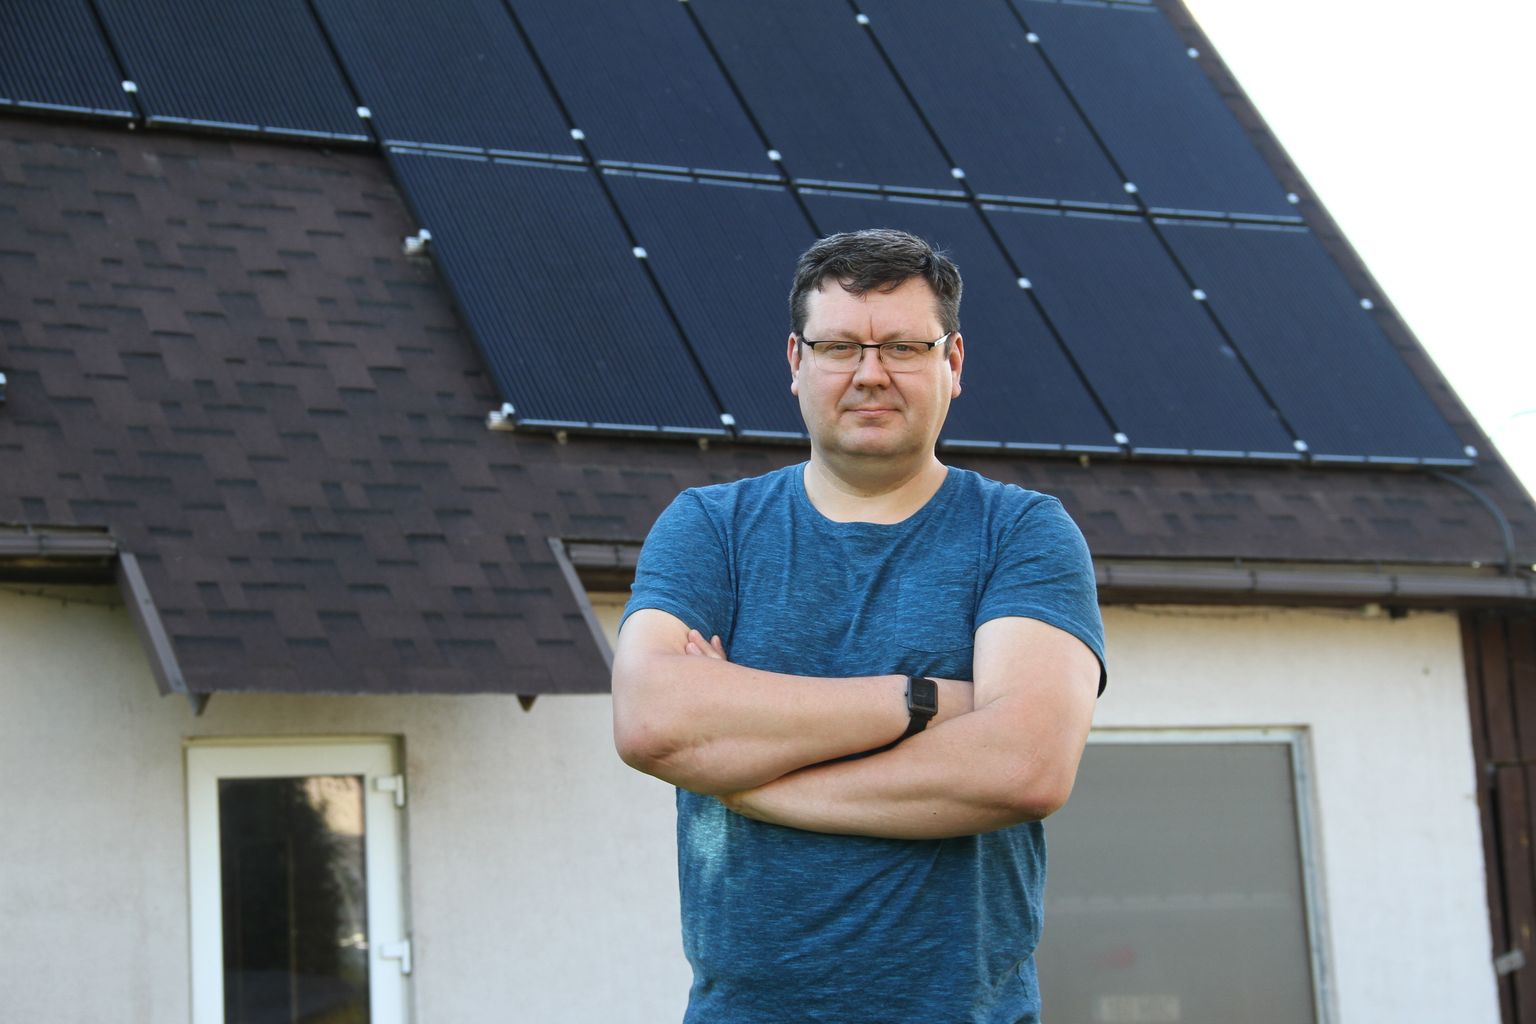 Дмитрий Фролов у собственной солнечной электростанции на крыше.